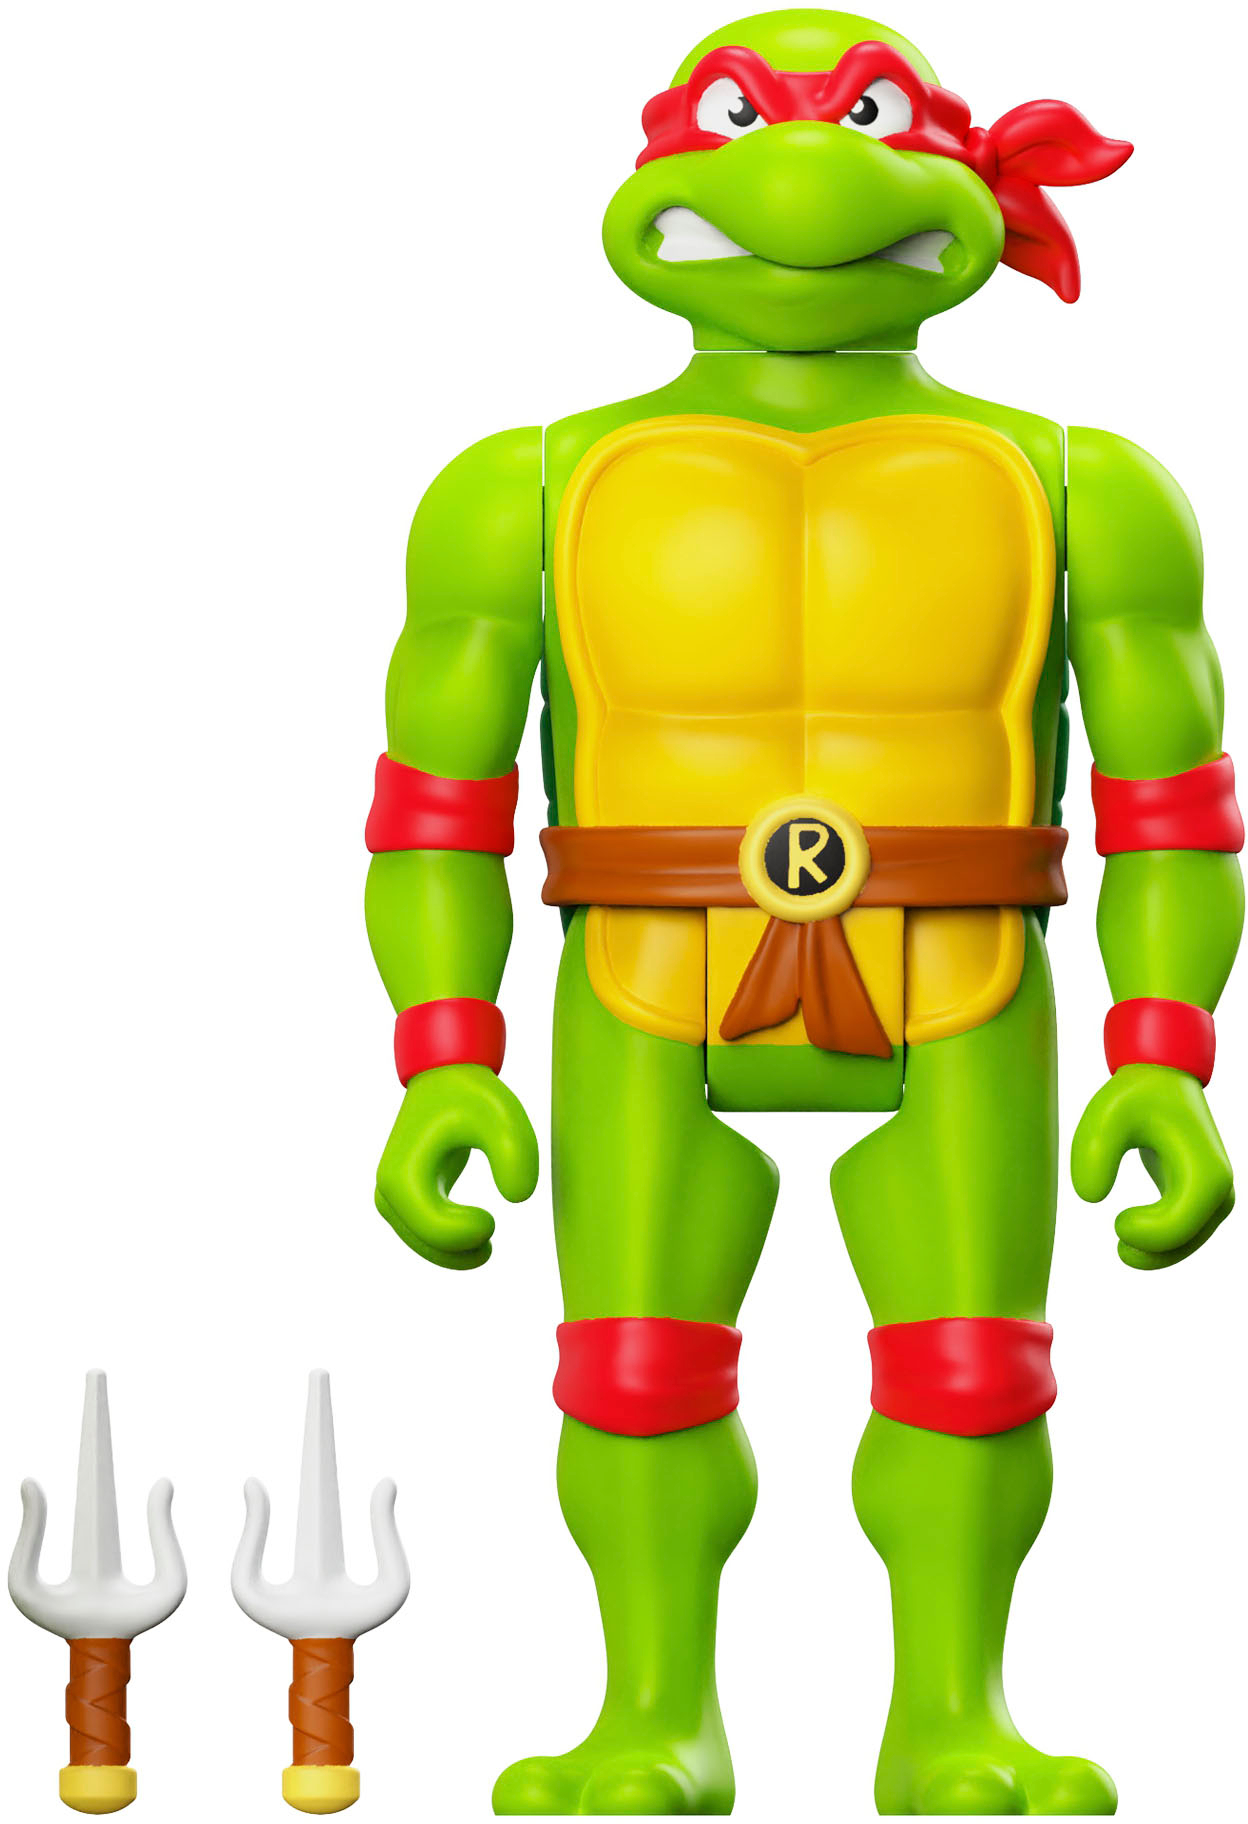 Angle View: Super7 - ReAction 3.75 in Plastic Teenage Mutant Ninja Turtles Action Figure - Toon Raphael - Multicolor